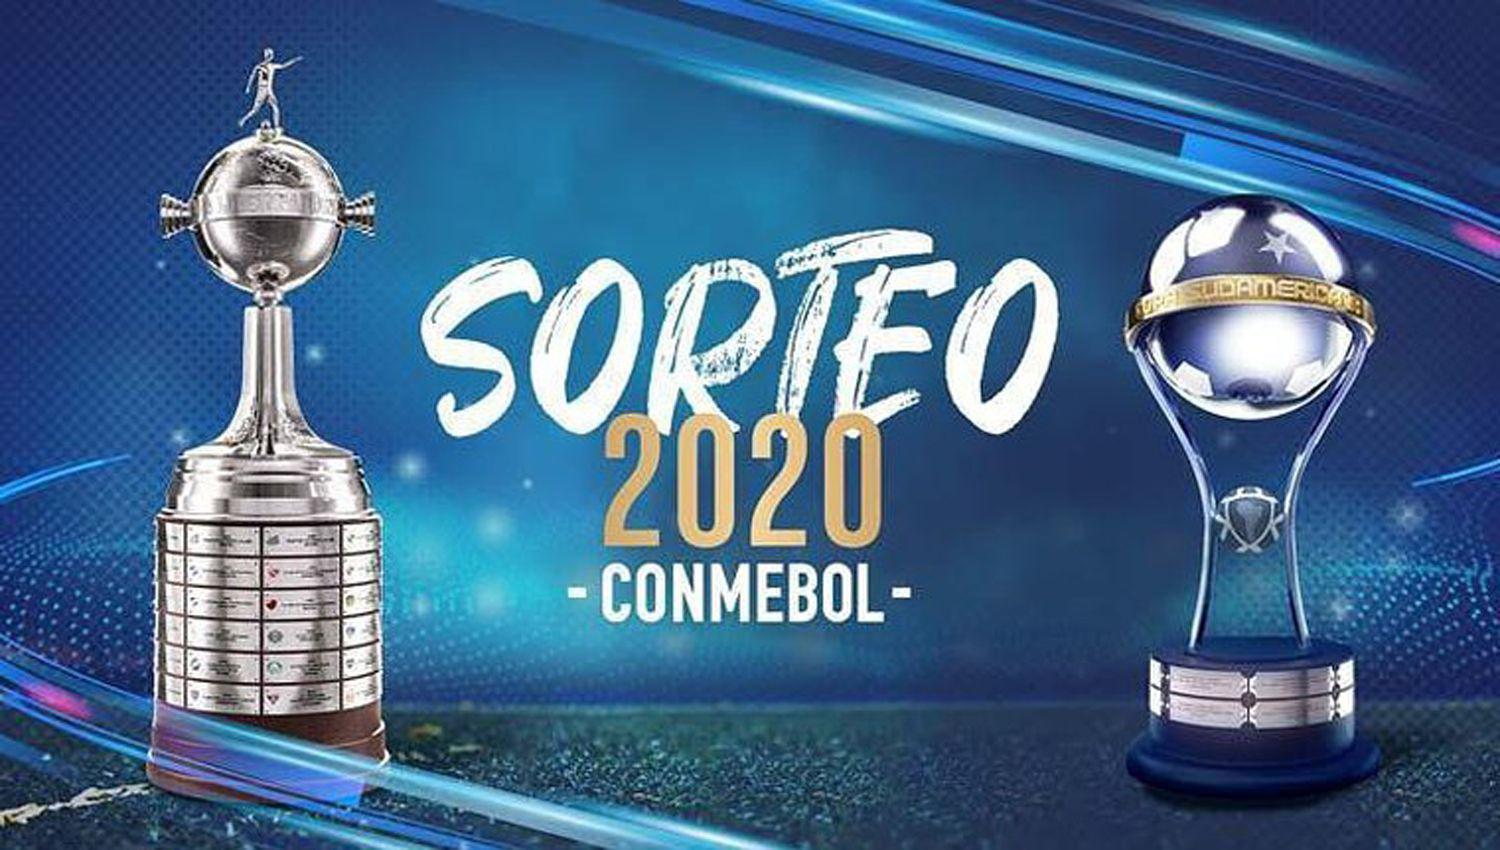 Se realiza hoy el sorteo de la Copa Libertadores- iquesten queacute canal mirar y a queacute hora